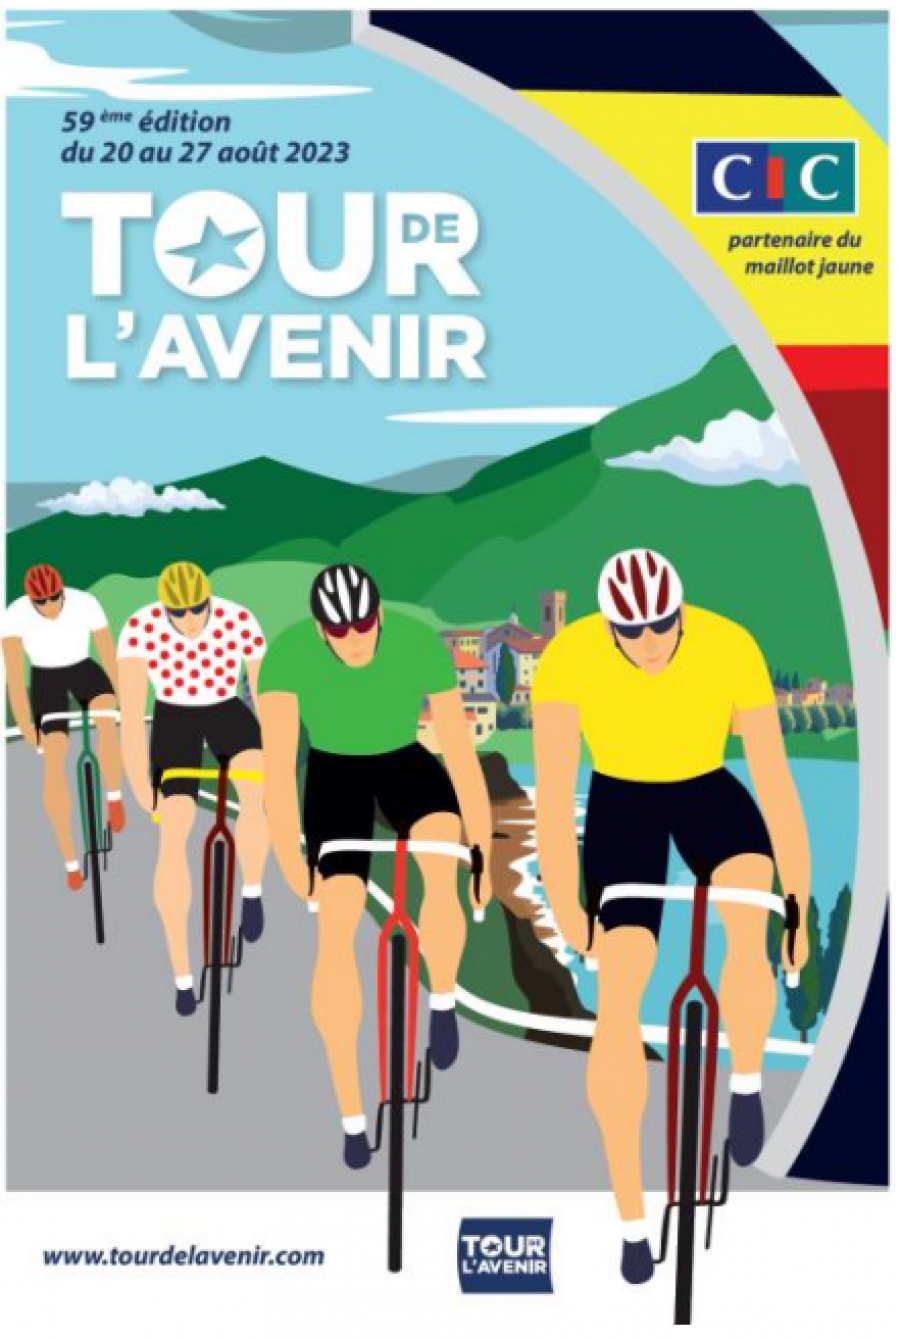 [CIC] Nouveau partenaire principal et partenaire maillot jaune du Tour de l’Avenir Hommes et Femmes